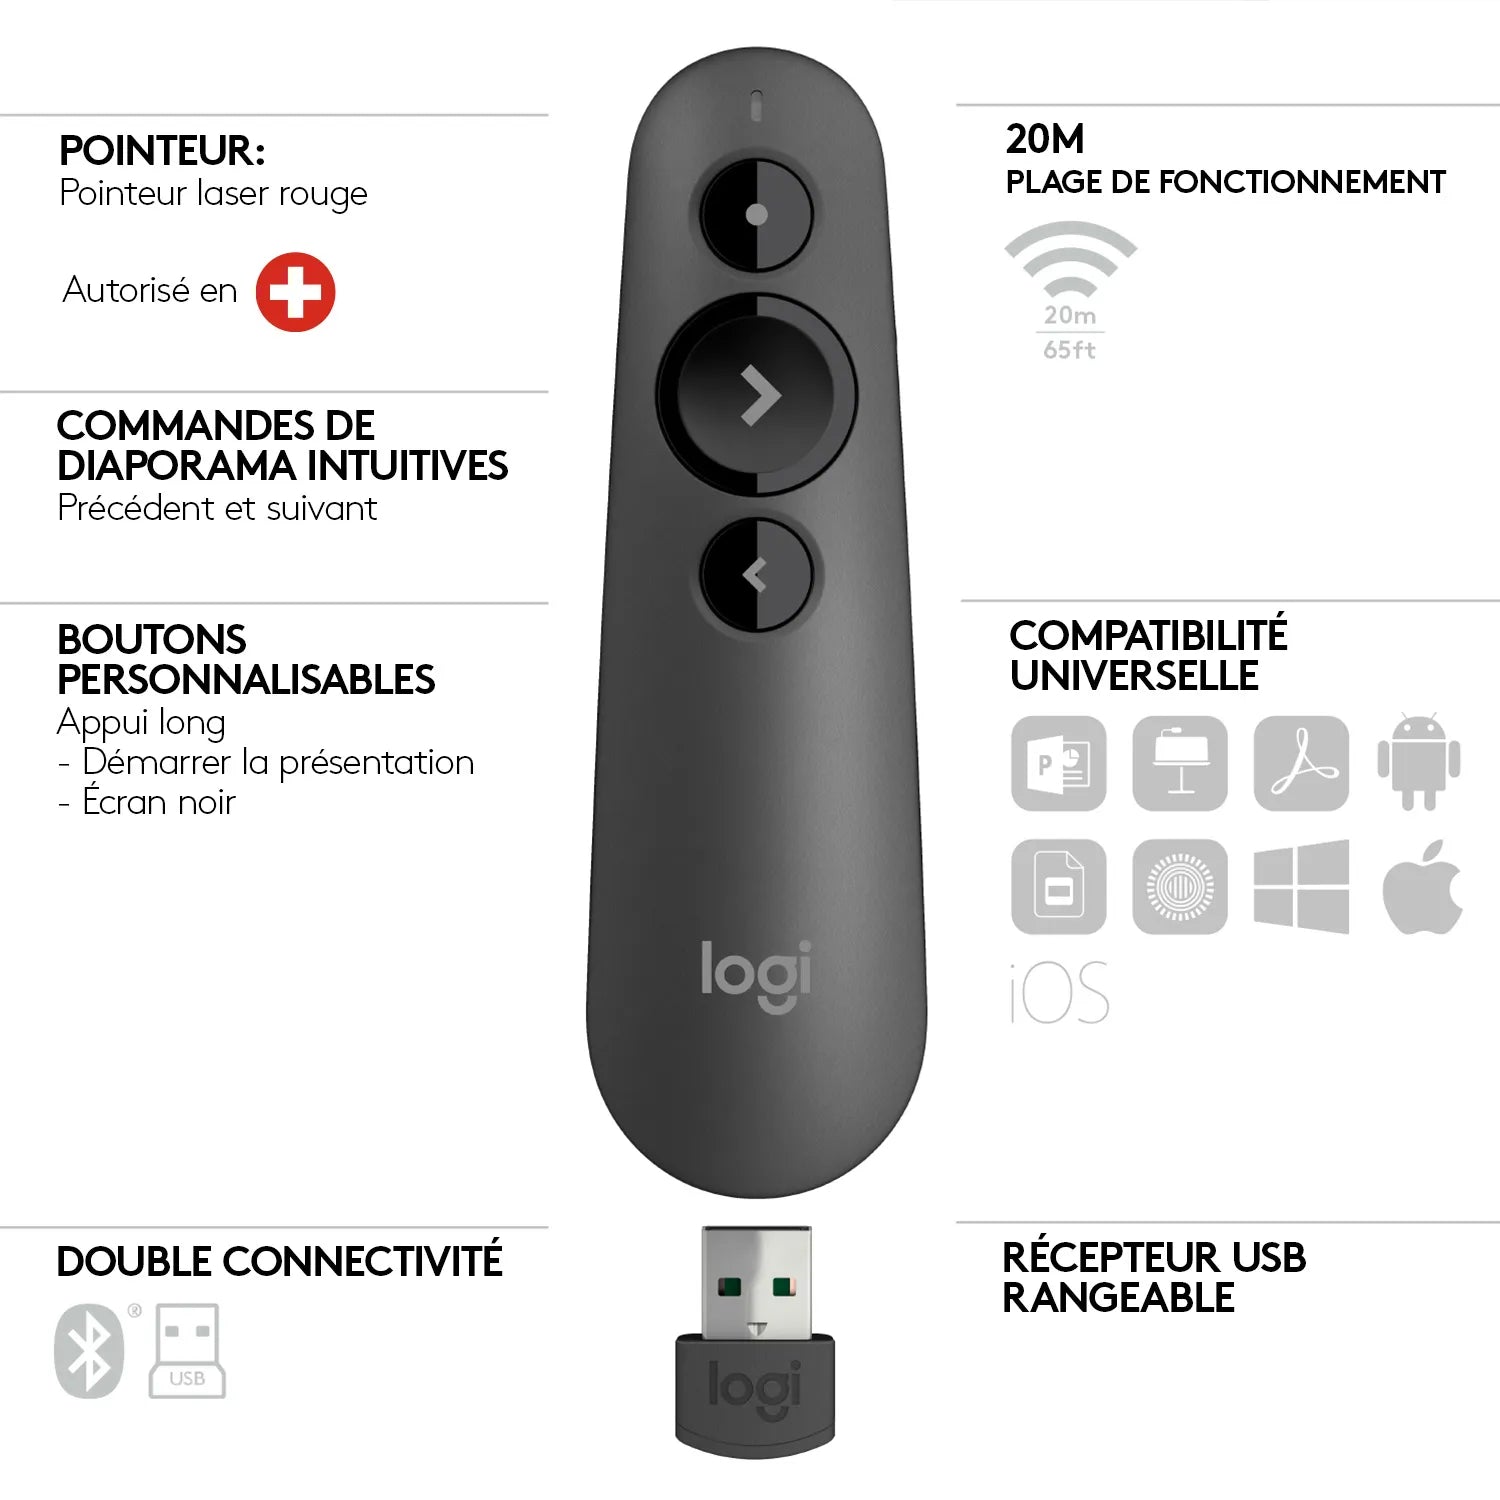 Logitech-Wireless-Presenter-R500-Red-Laser-Pointer